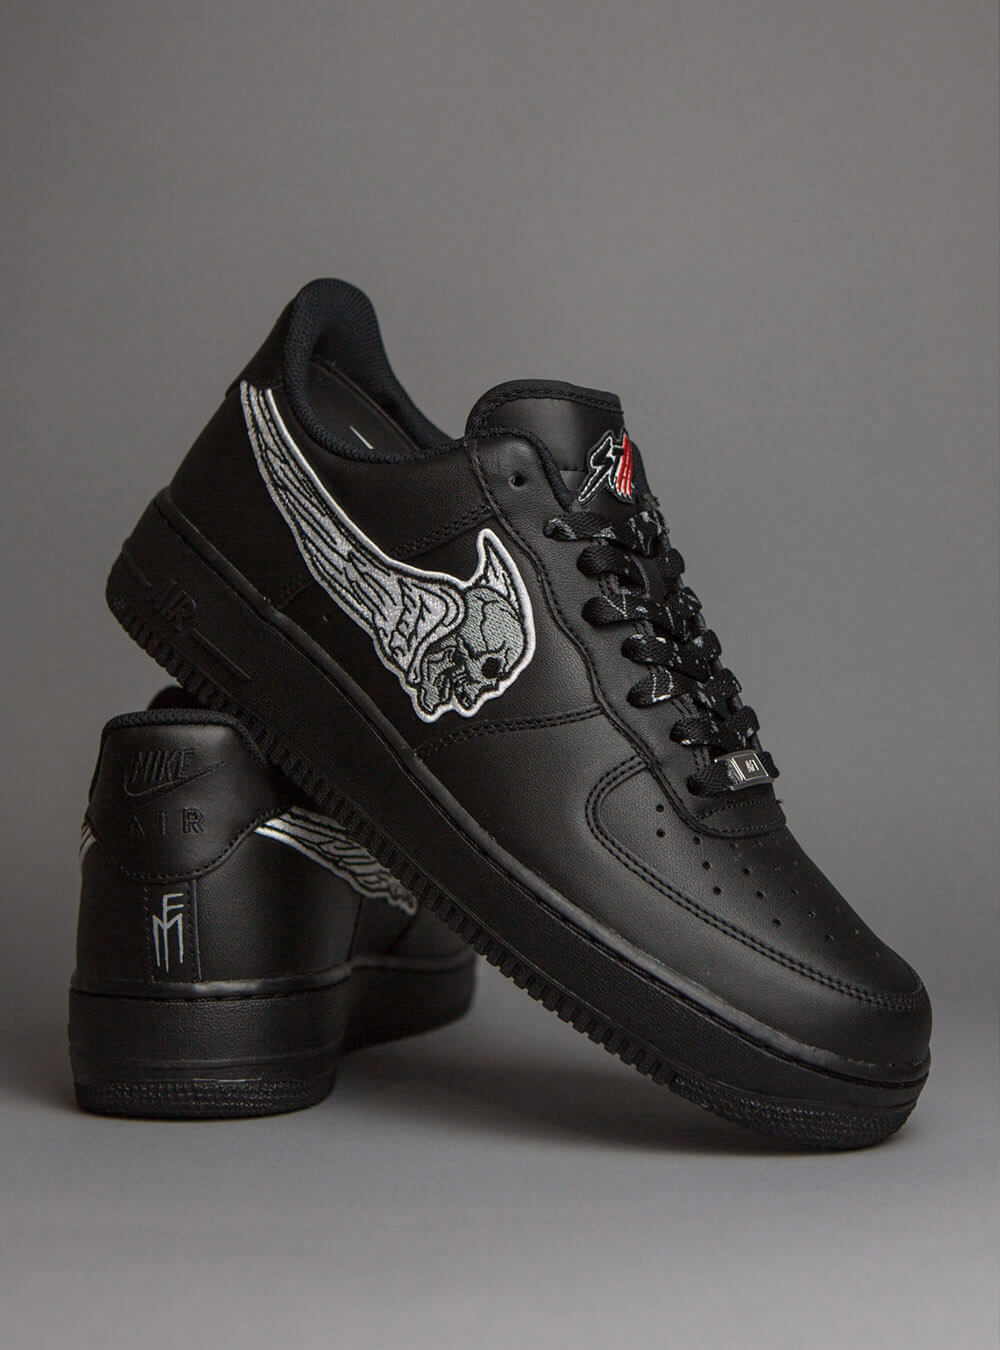 Sinner Af1 Black Custom Sneakers